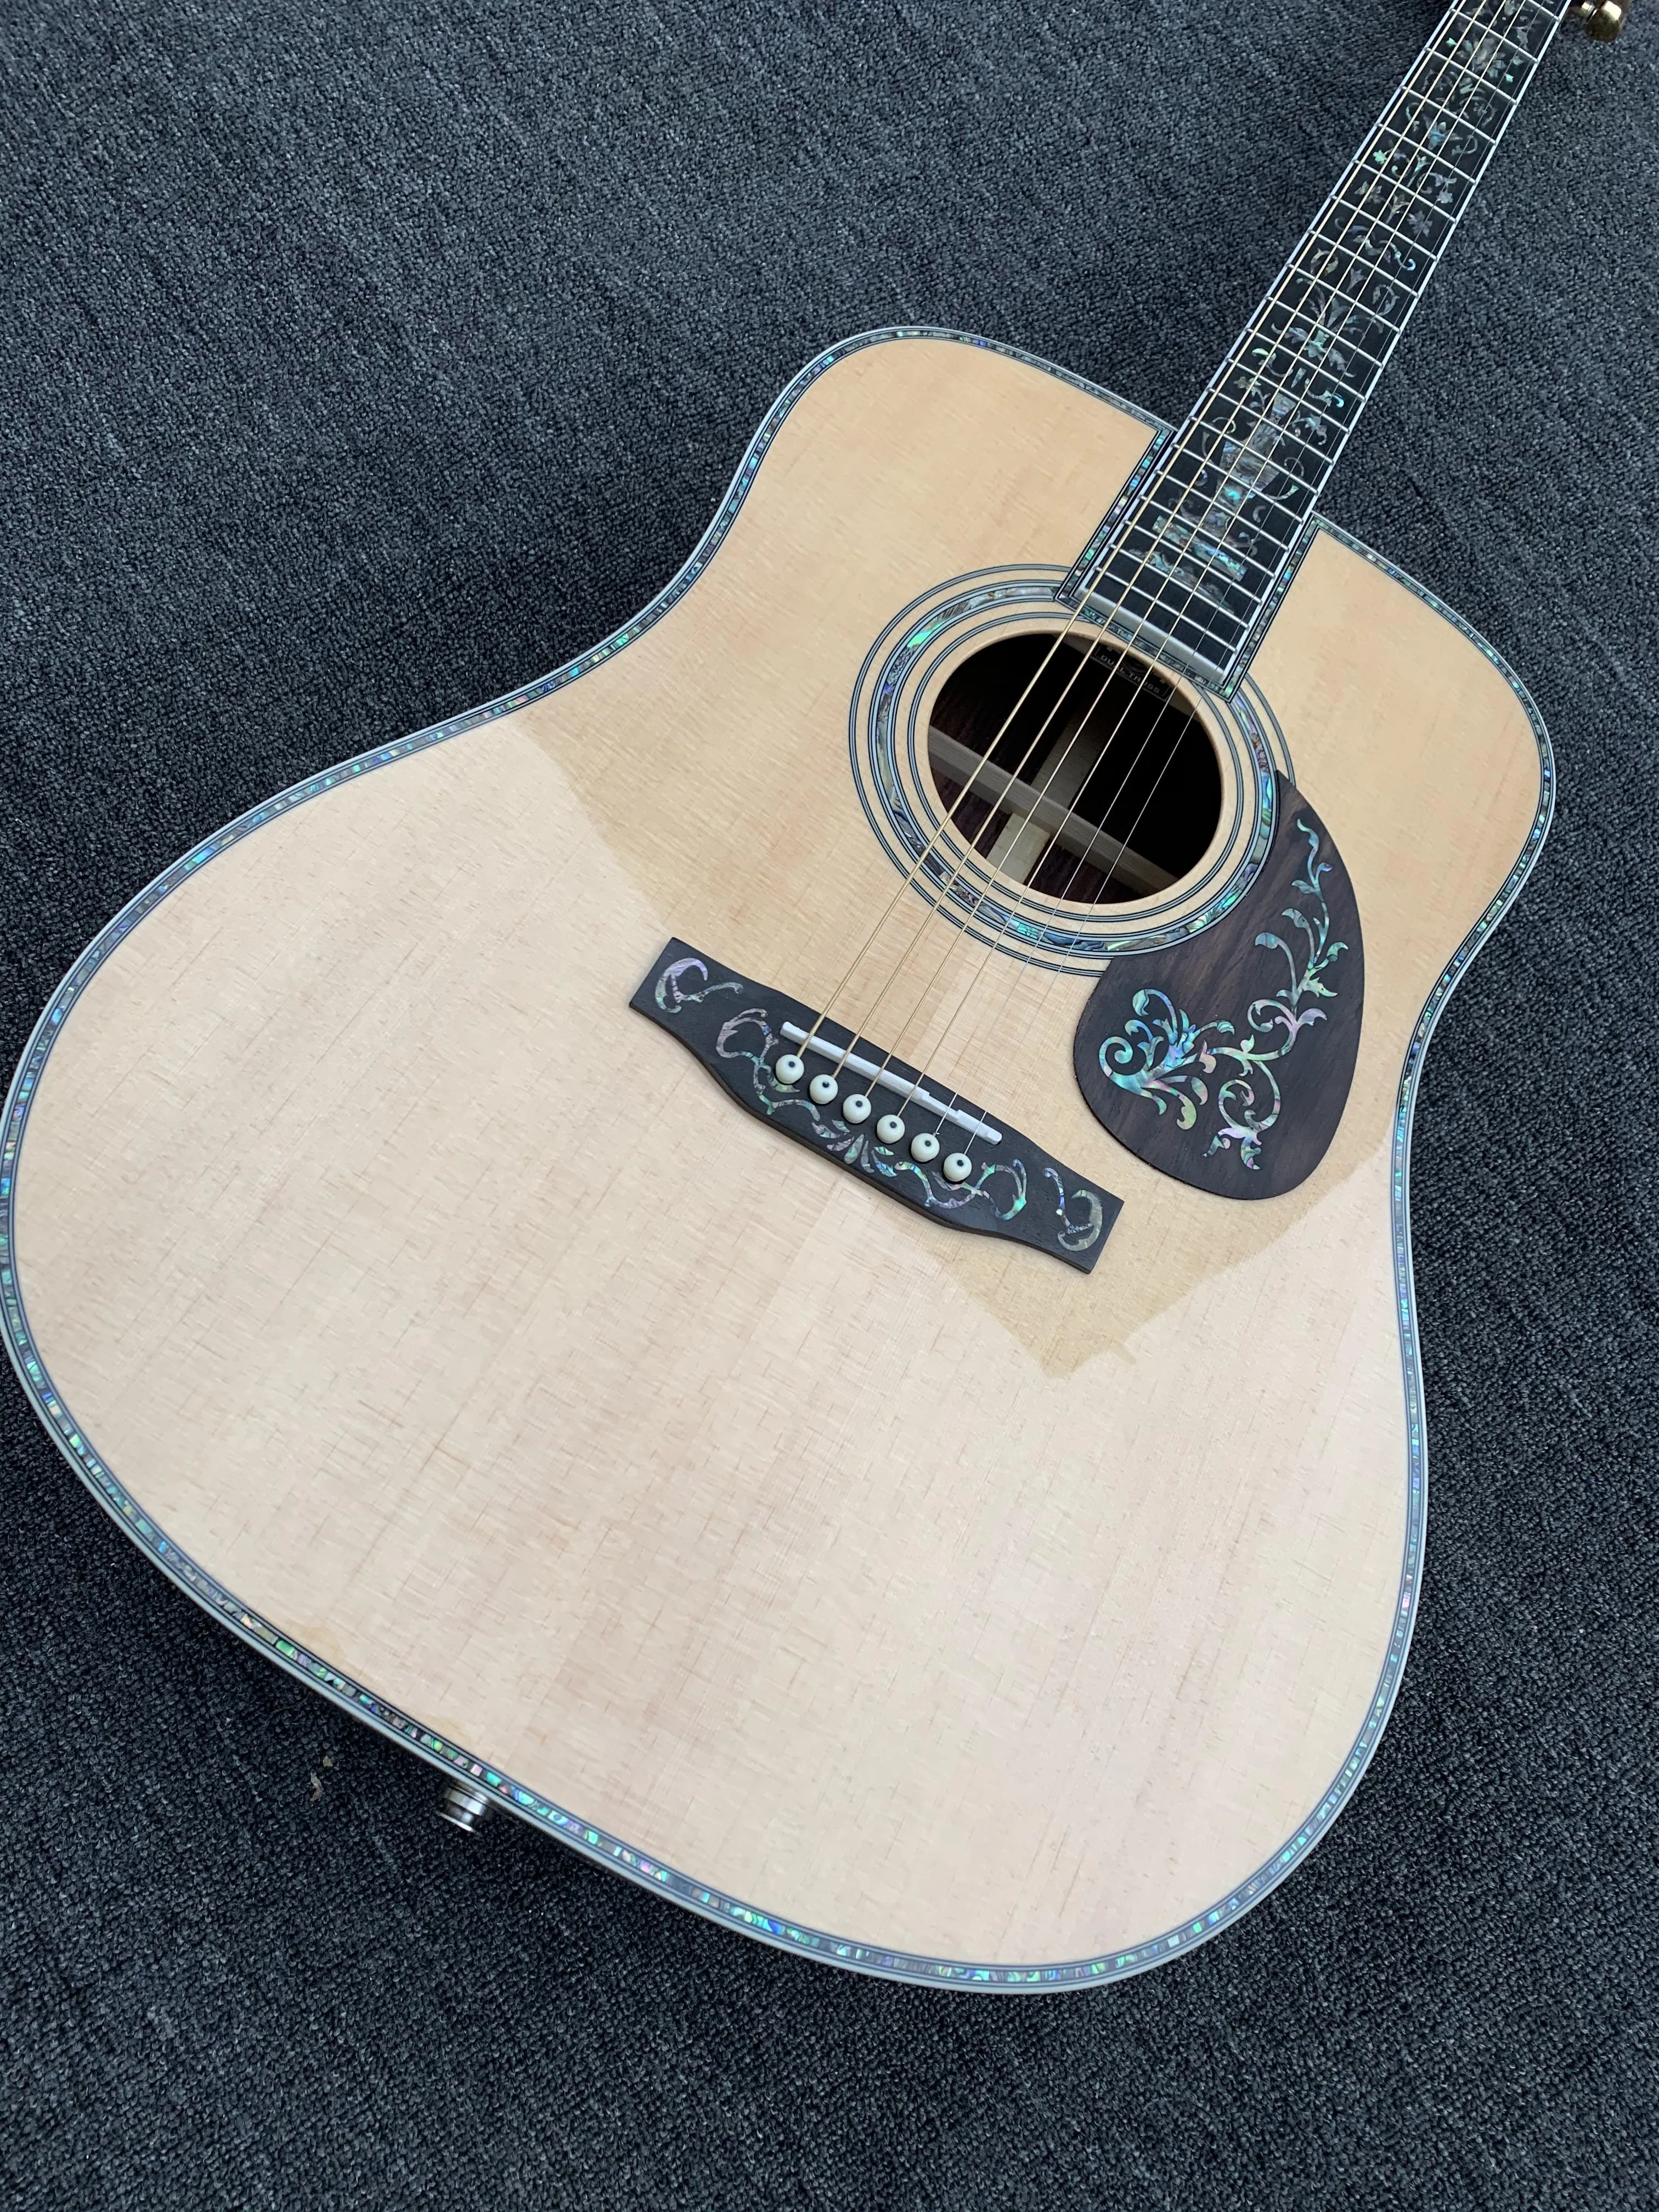 2022 Nieuwe 41-inch luxe akoestische akoestische gitaar + Eq. Spruce fineer Rosewood zijkanten en rug, ebbenhouten vaterbord abalone shell rand.